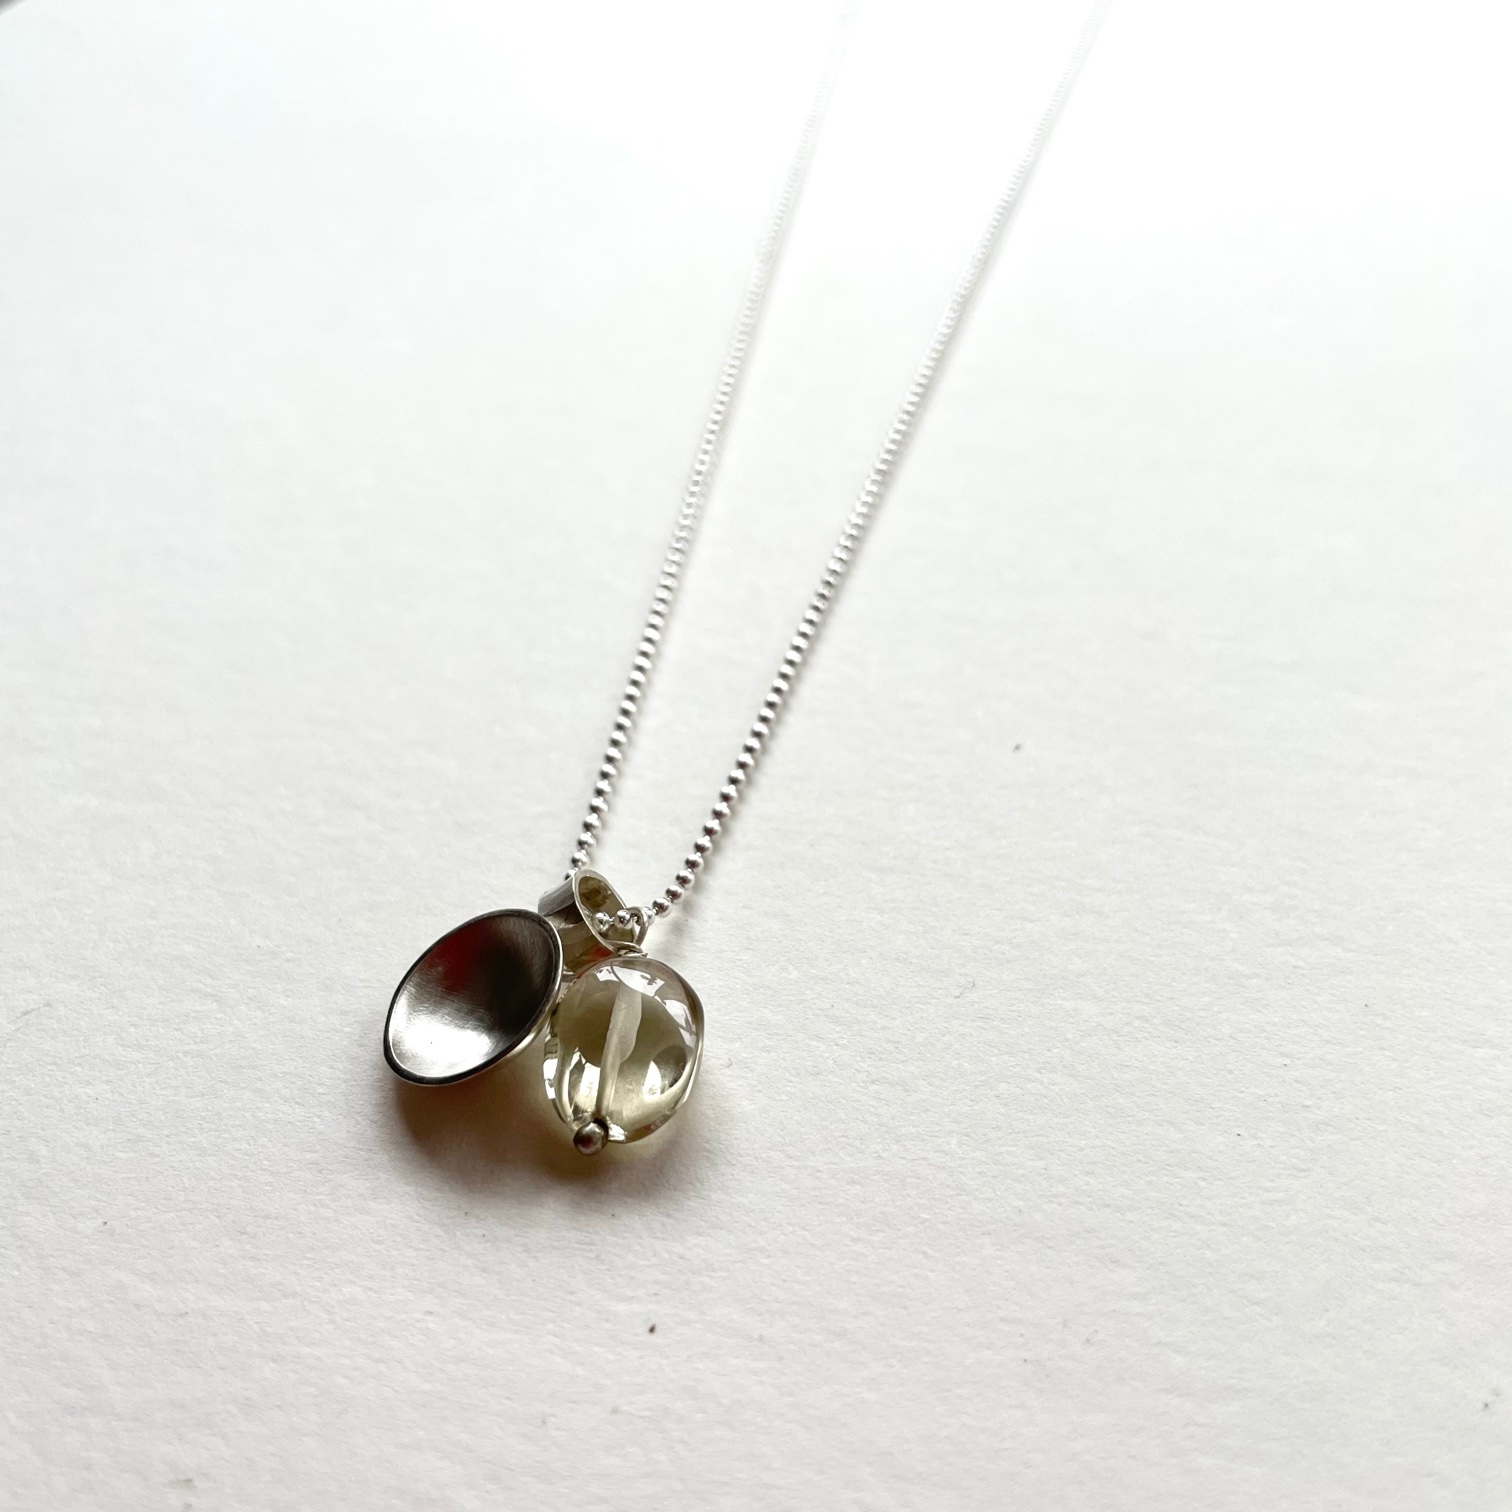 Silver and cloudy quartz pendant necklace by Karen Parker